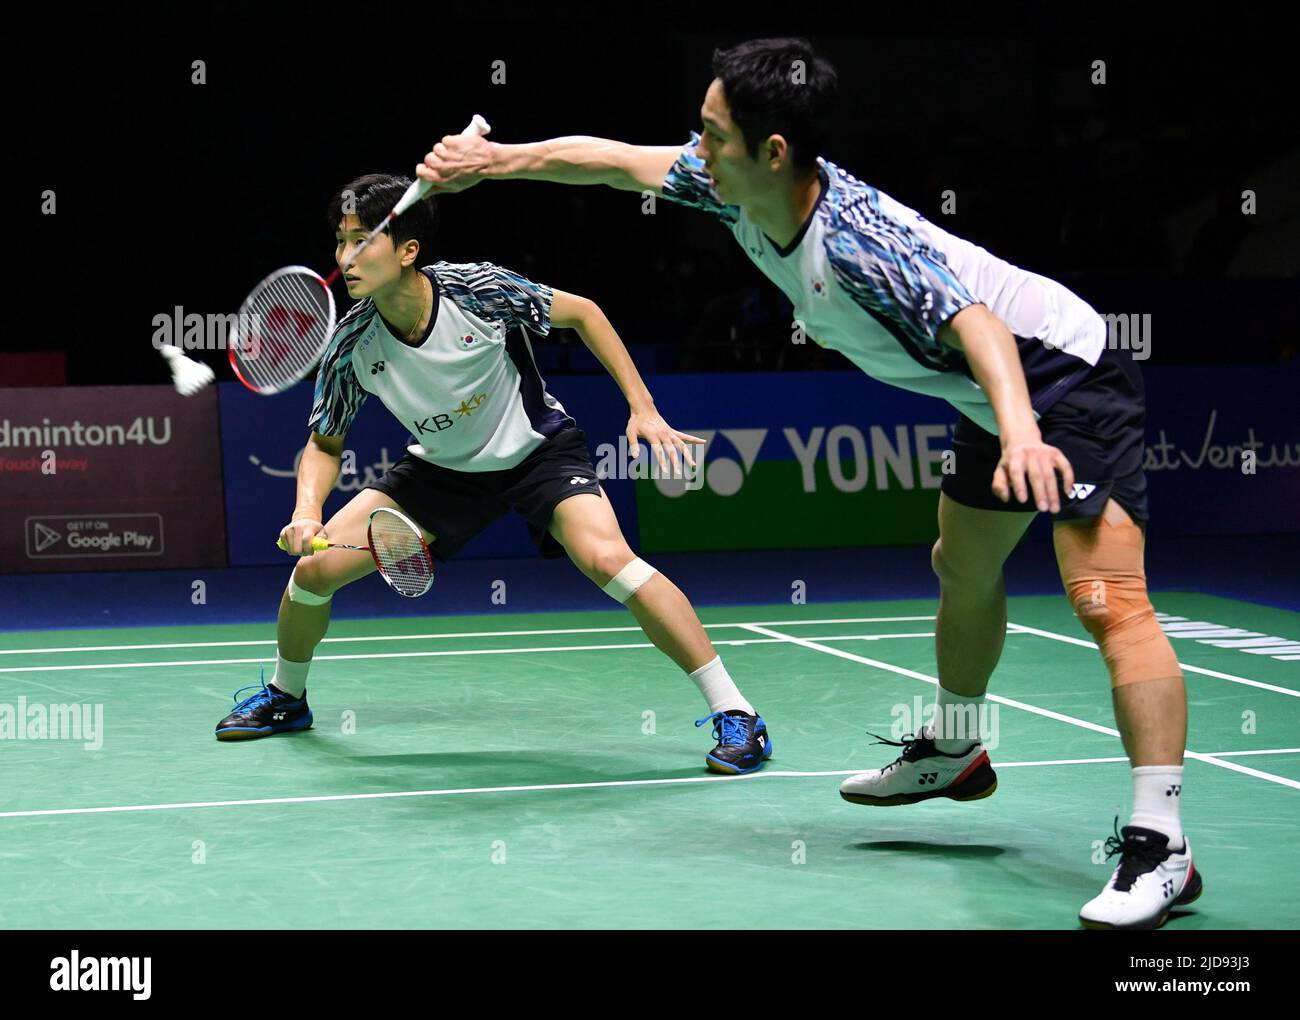 badminton indonesia open 2022 live